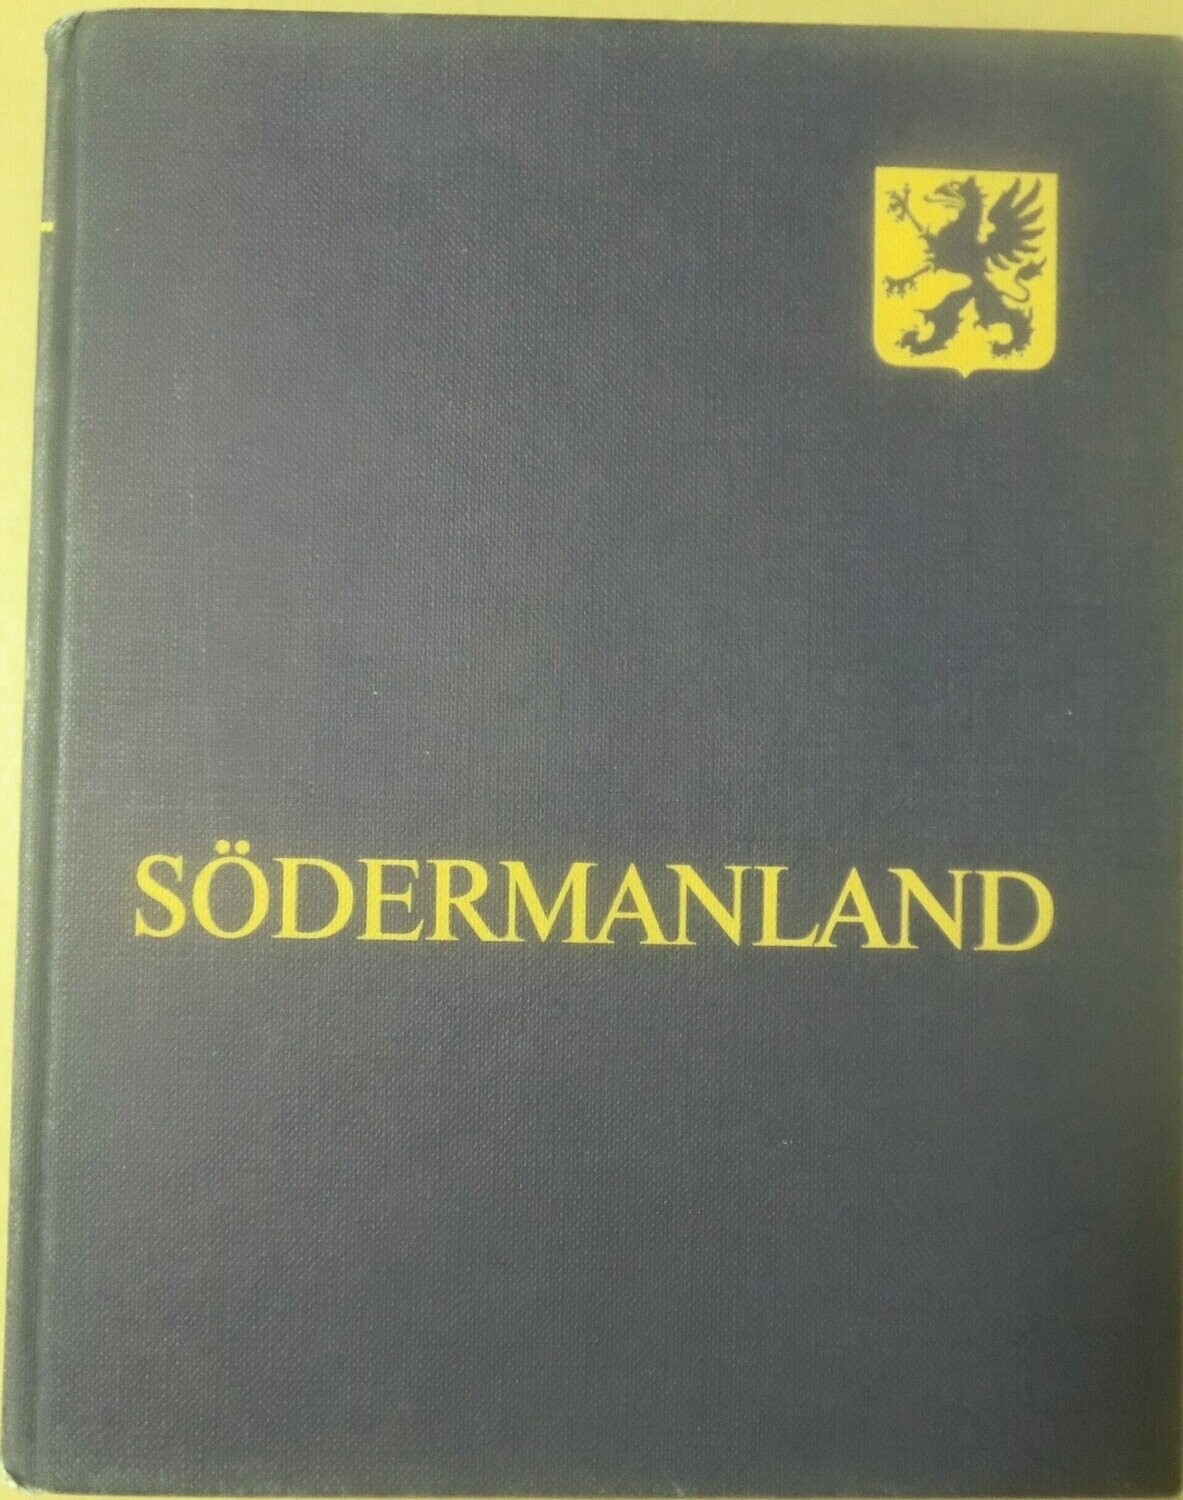 STF årsskrift 1979 - Södermanland